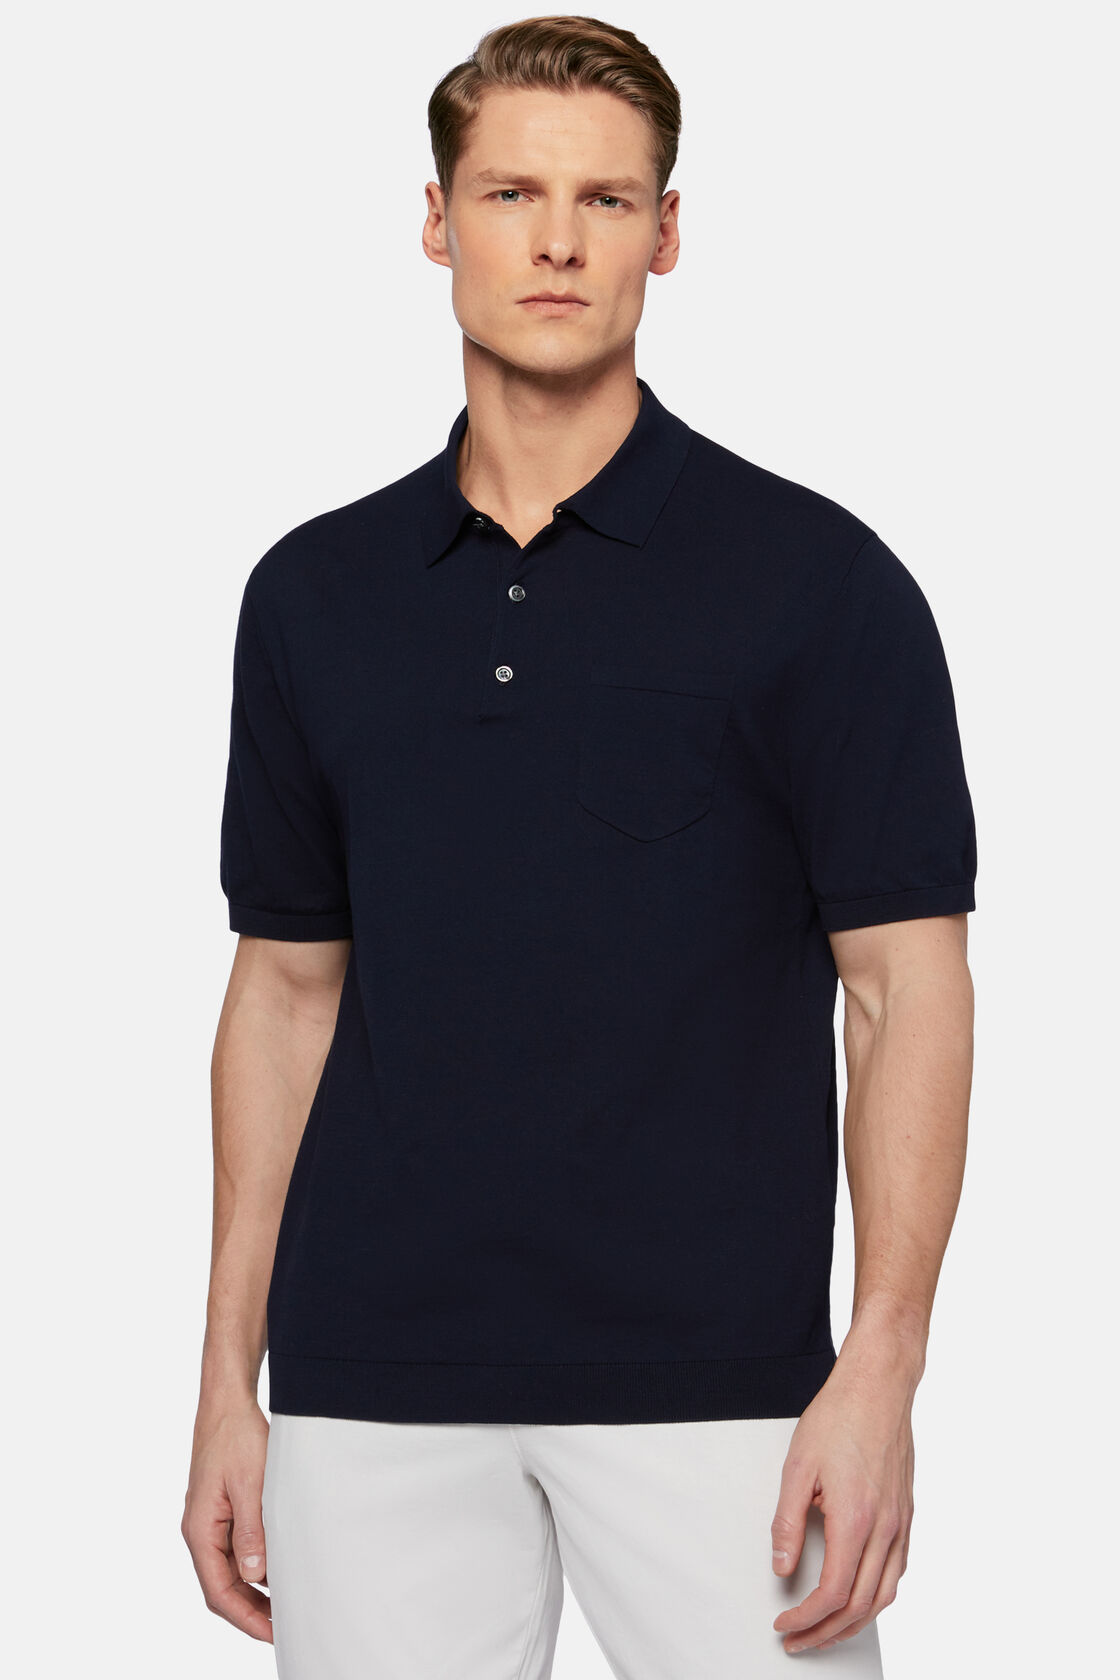 Granatowa koszulka polo z bawełnianej, dzianinowej krepy, Navy blue, hi-res